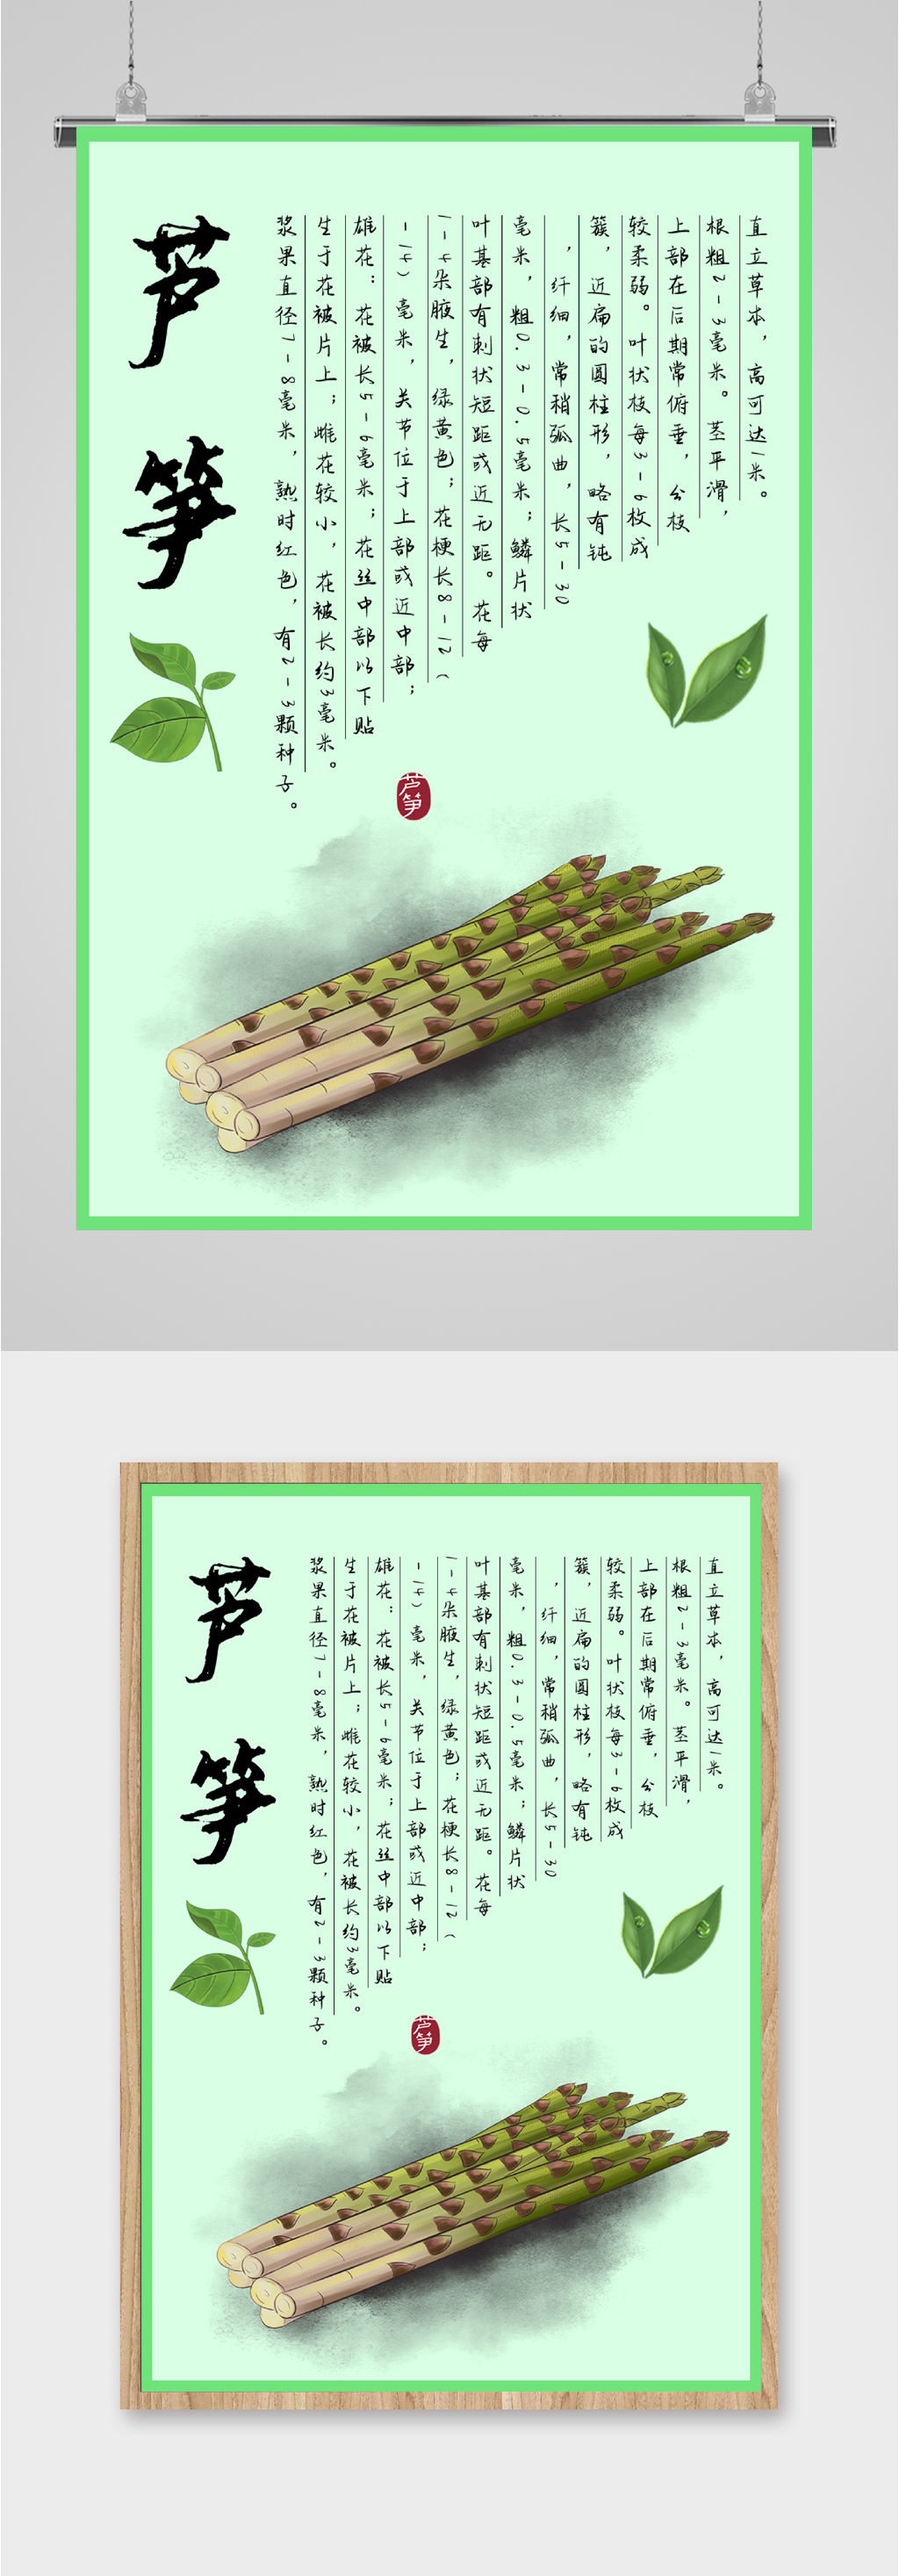 芦竹 用途图片